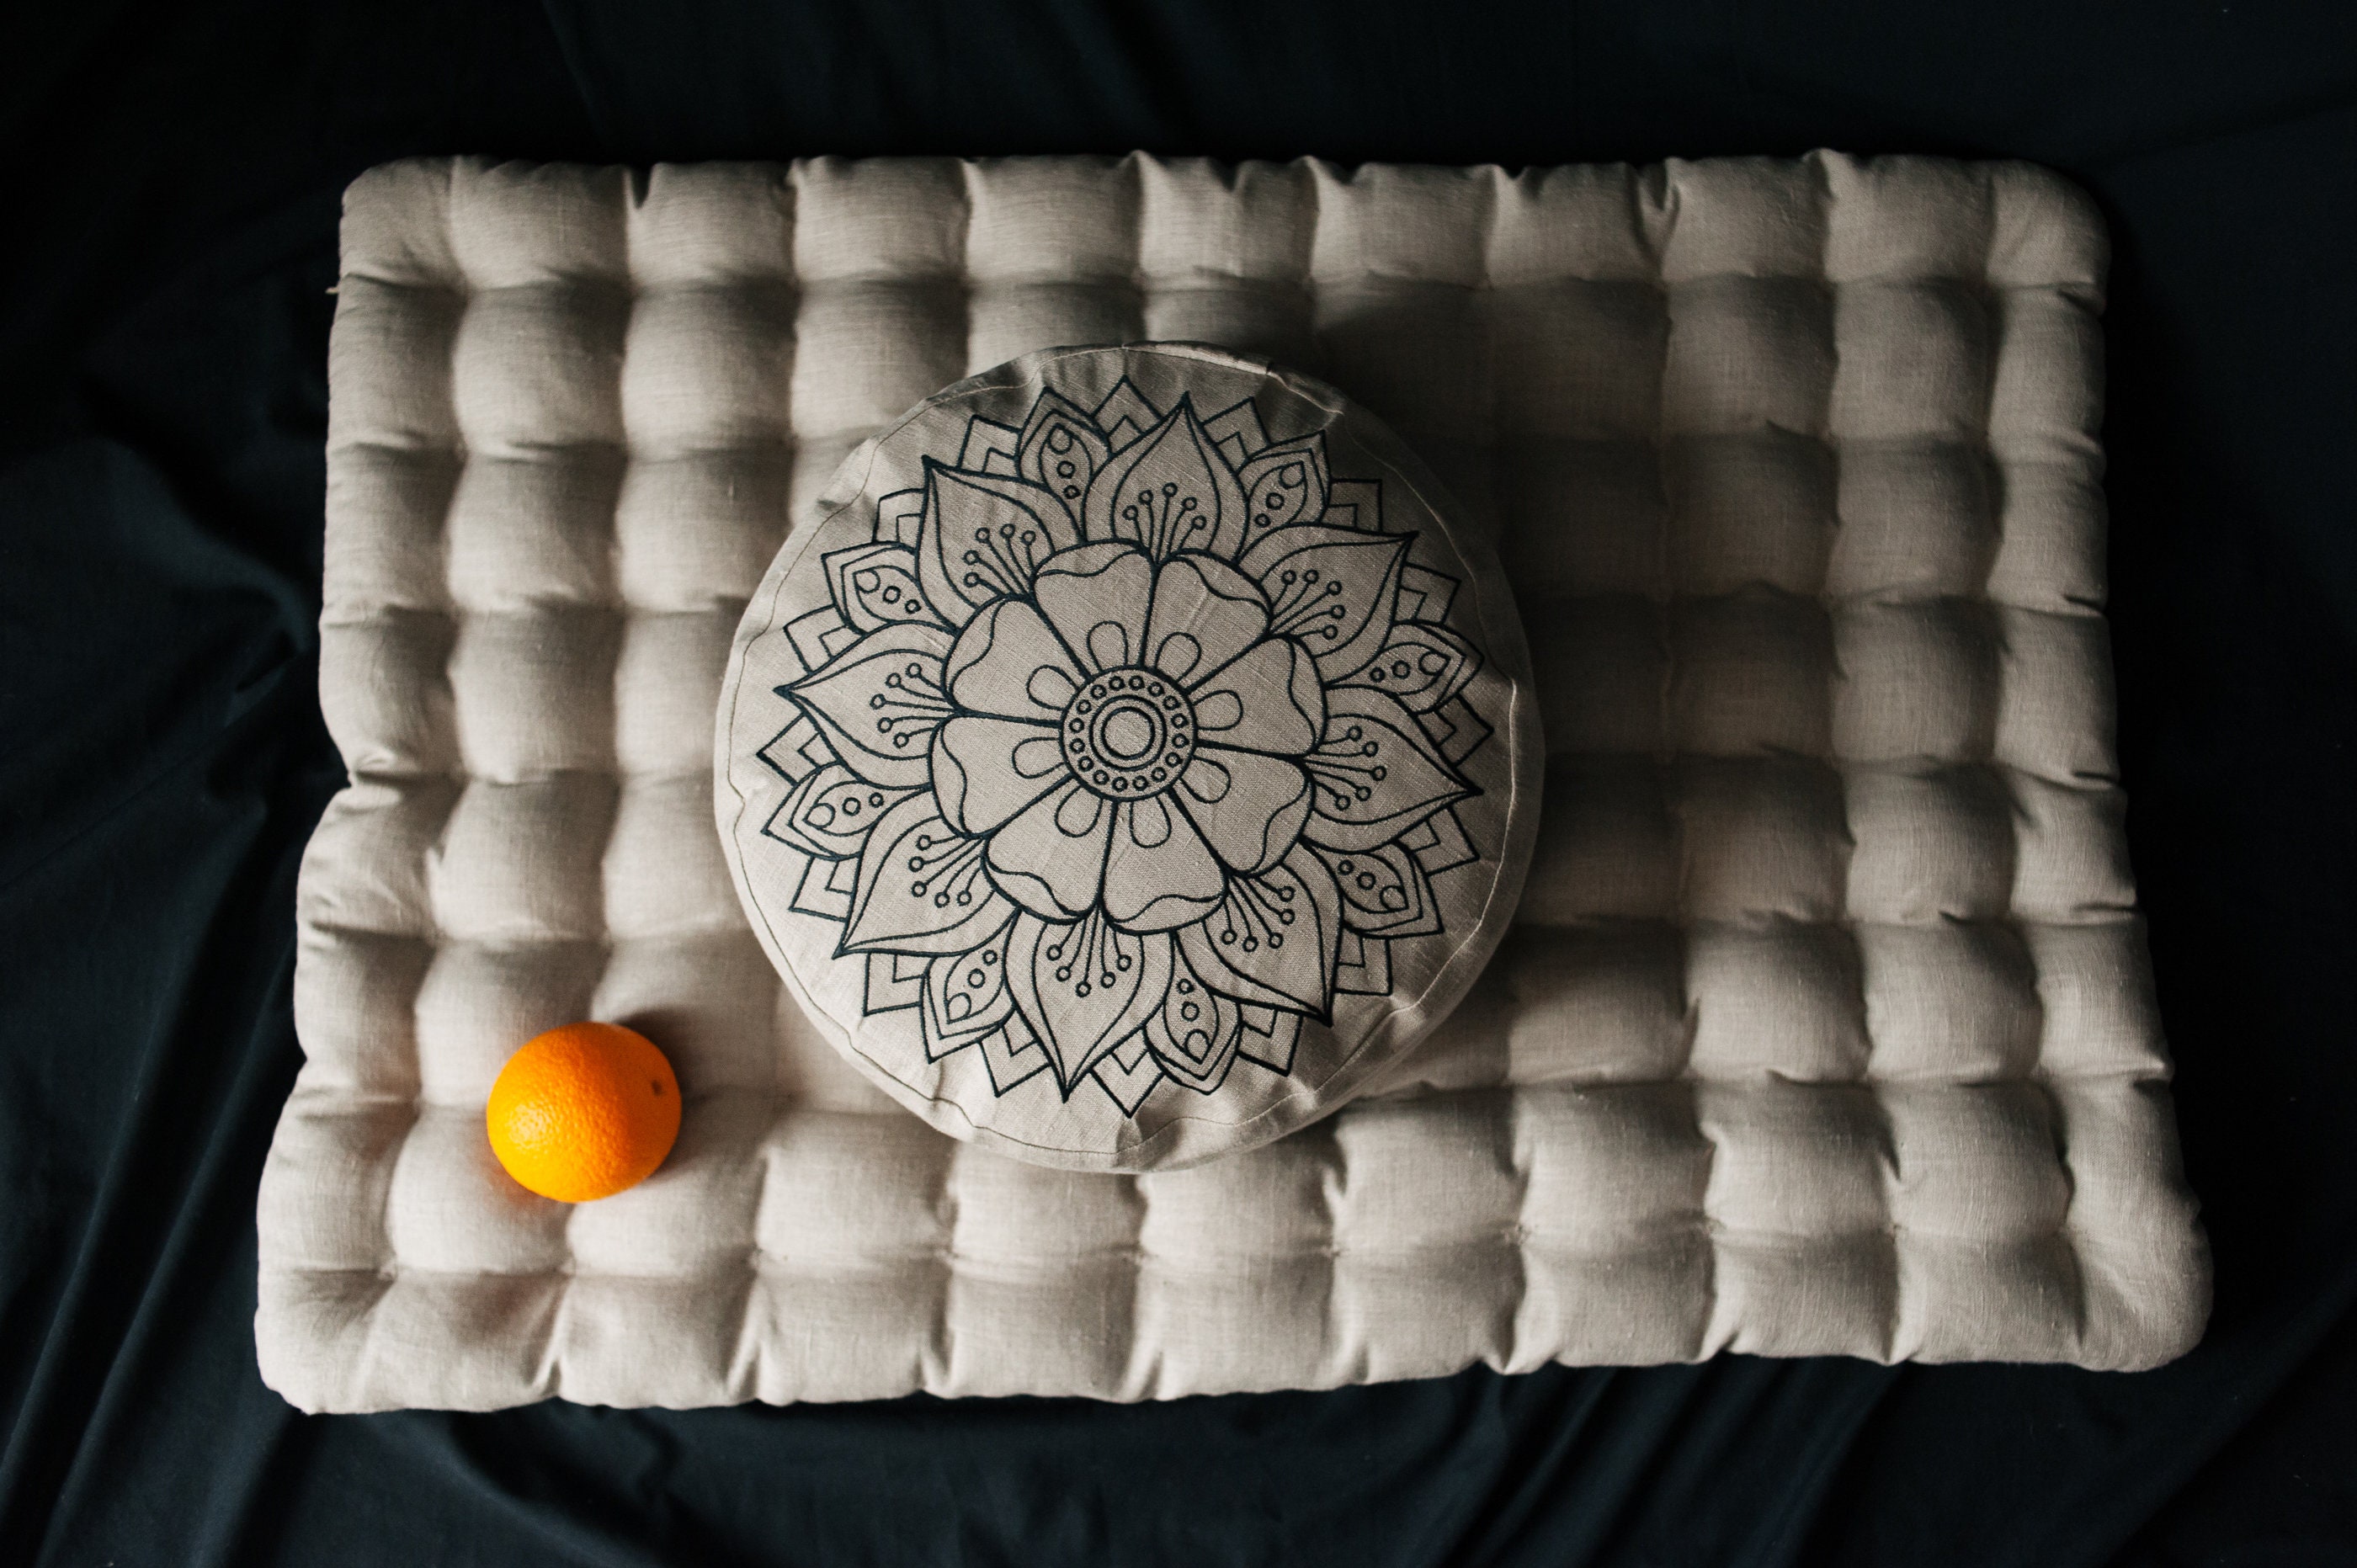 Zafu Yoga Meditation Pillow with USA Buckwheat Hull Fill, Certified Cotton